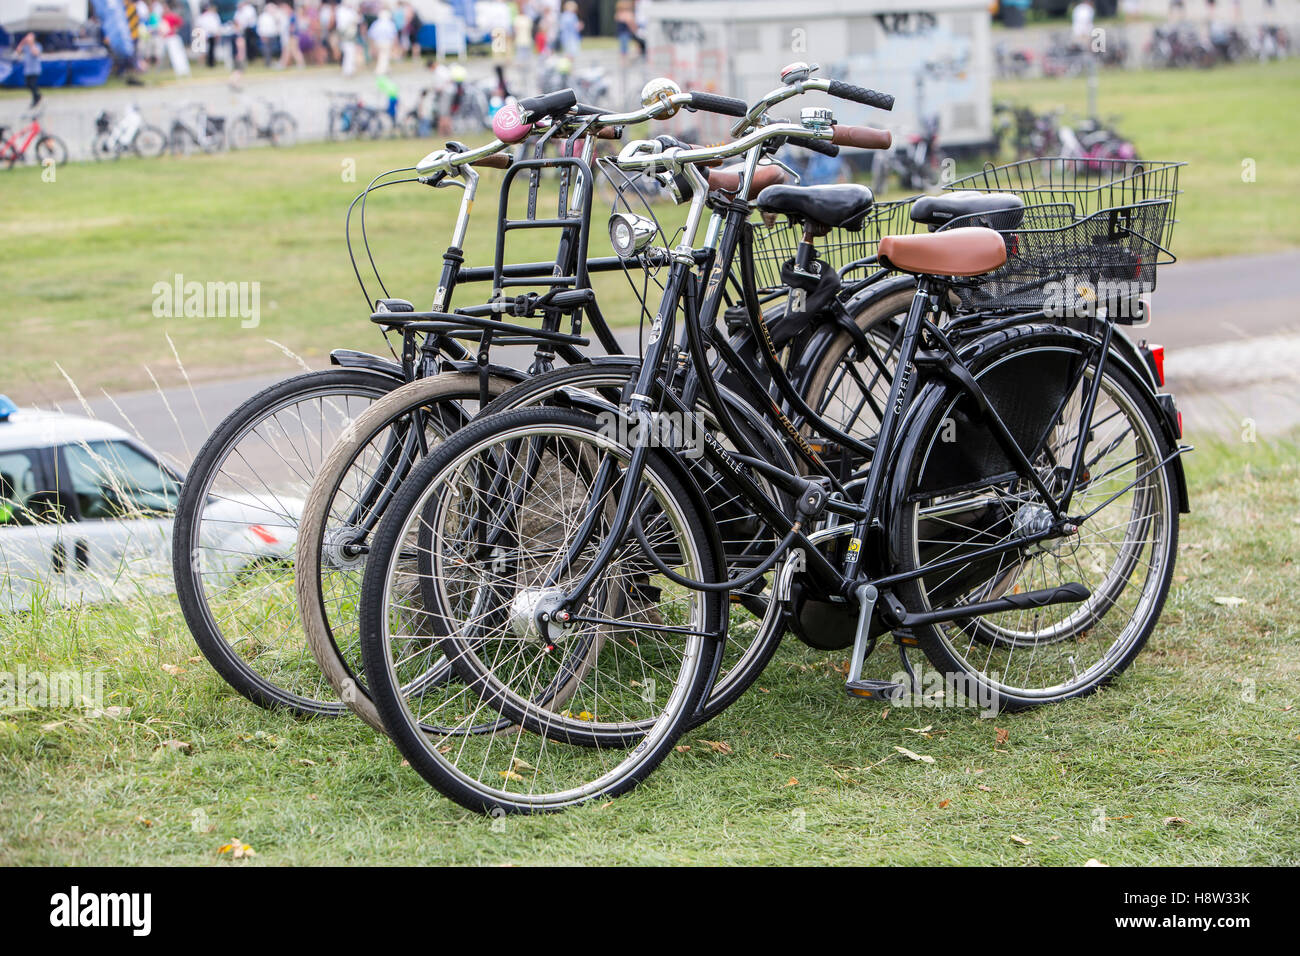 Verschiedene Fahrräder, Hollandräder, alt, Räder retrò, zusammen angekettet, abgestellt, Foto Stock